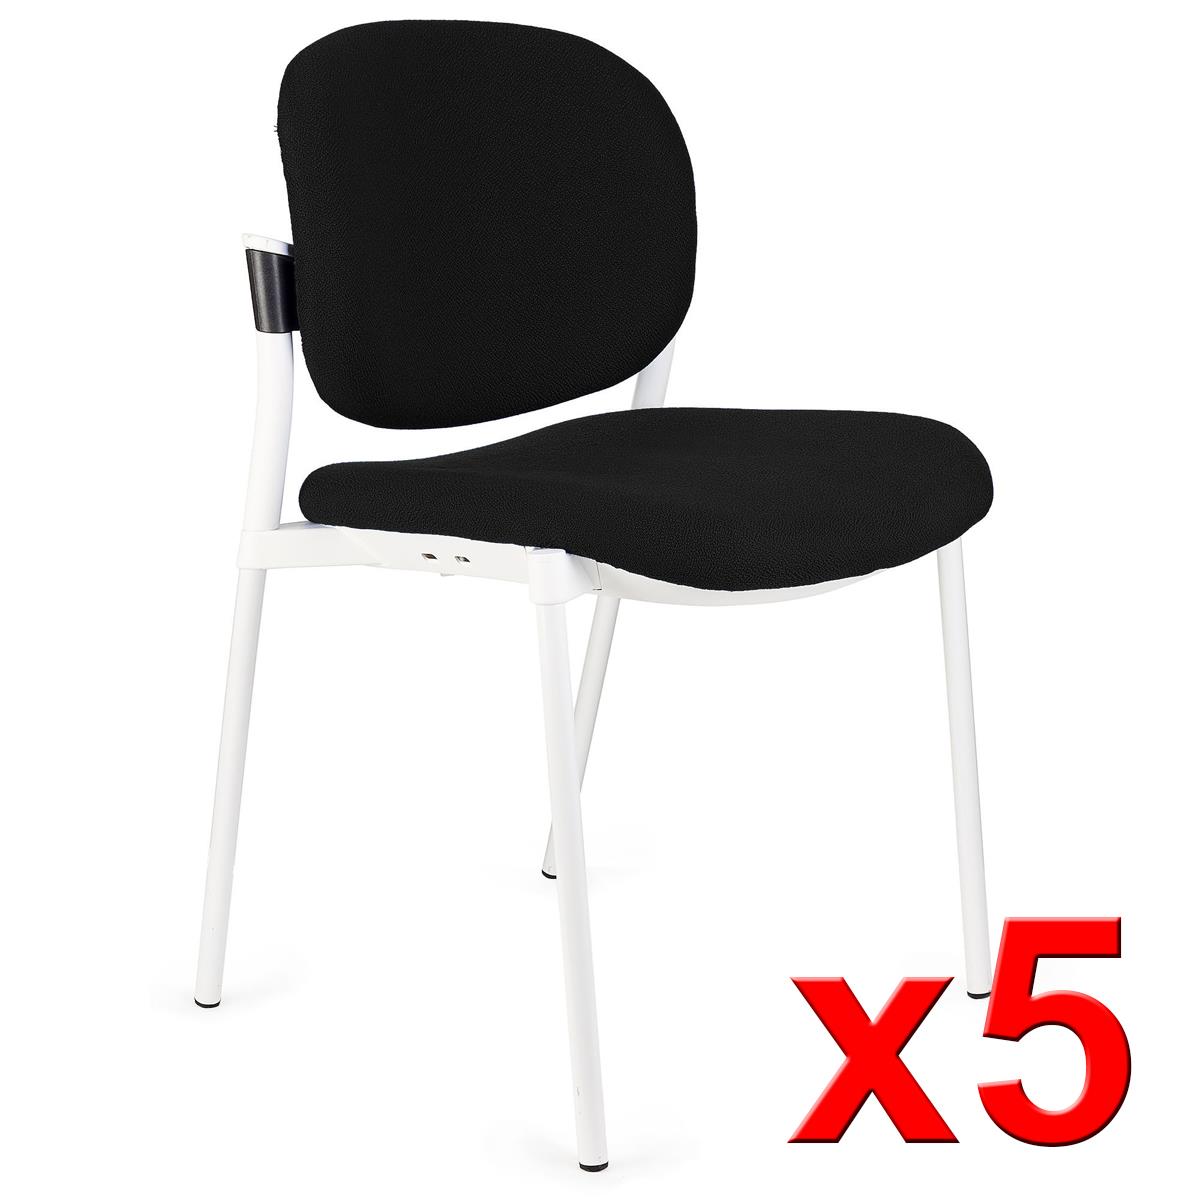 Lote de 5 sillas de Confidente ERIC RESPALDO ACOLCHADO, Cómodas y Prácticas, Apilables, Color Negro